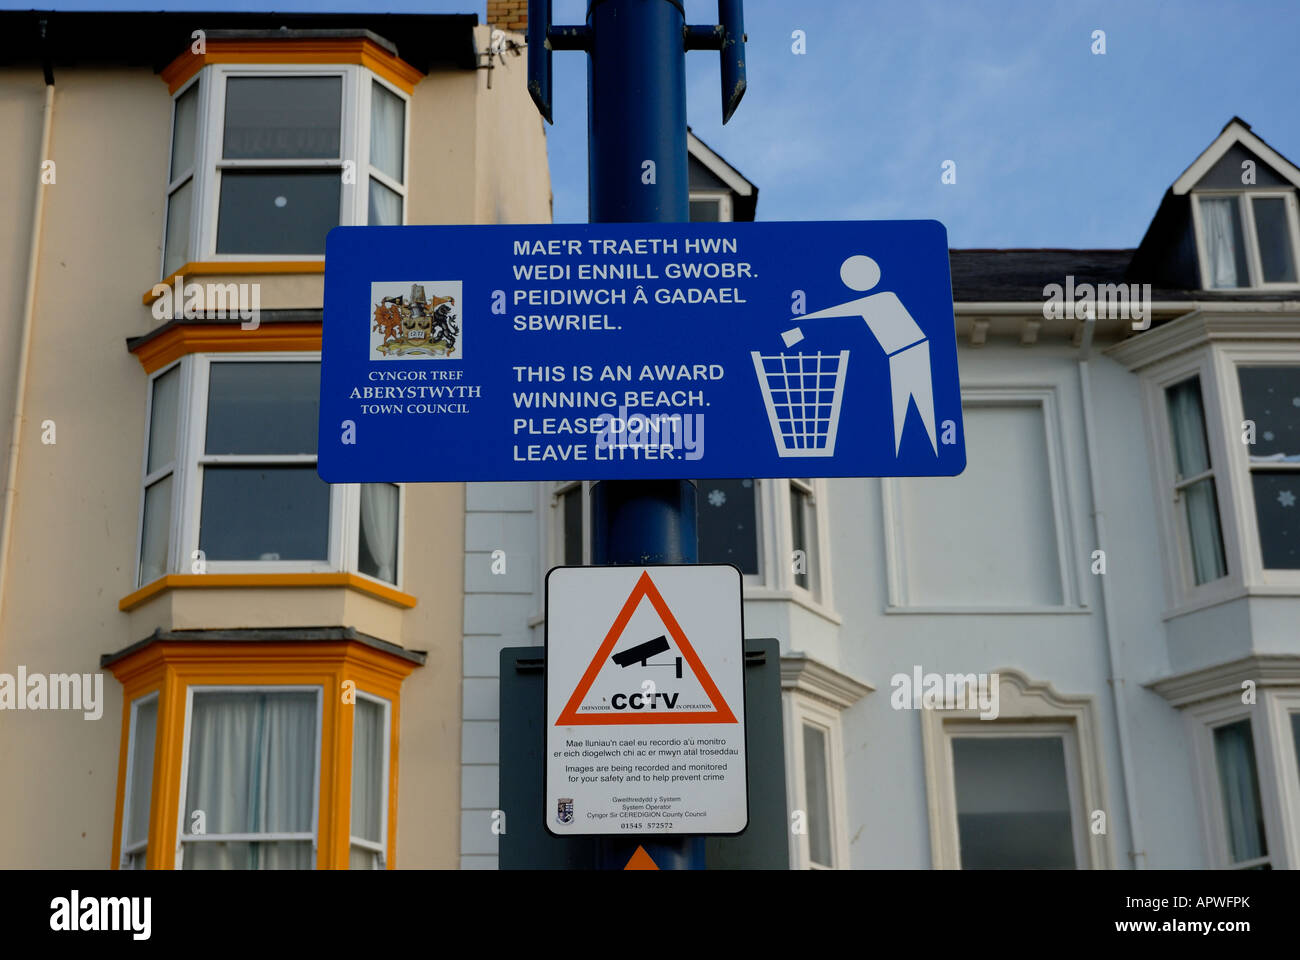 Melden Sie Menschen ermutigende, nicht zu eine preisgekrönten Strand von Aberystwyth, Wales Wurf Stockfoto